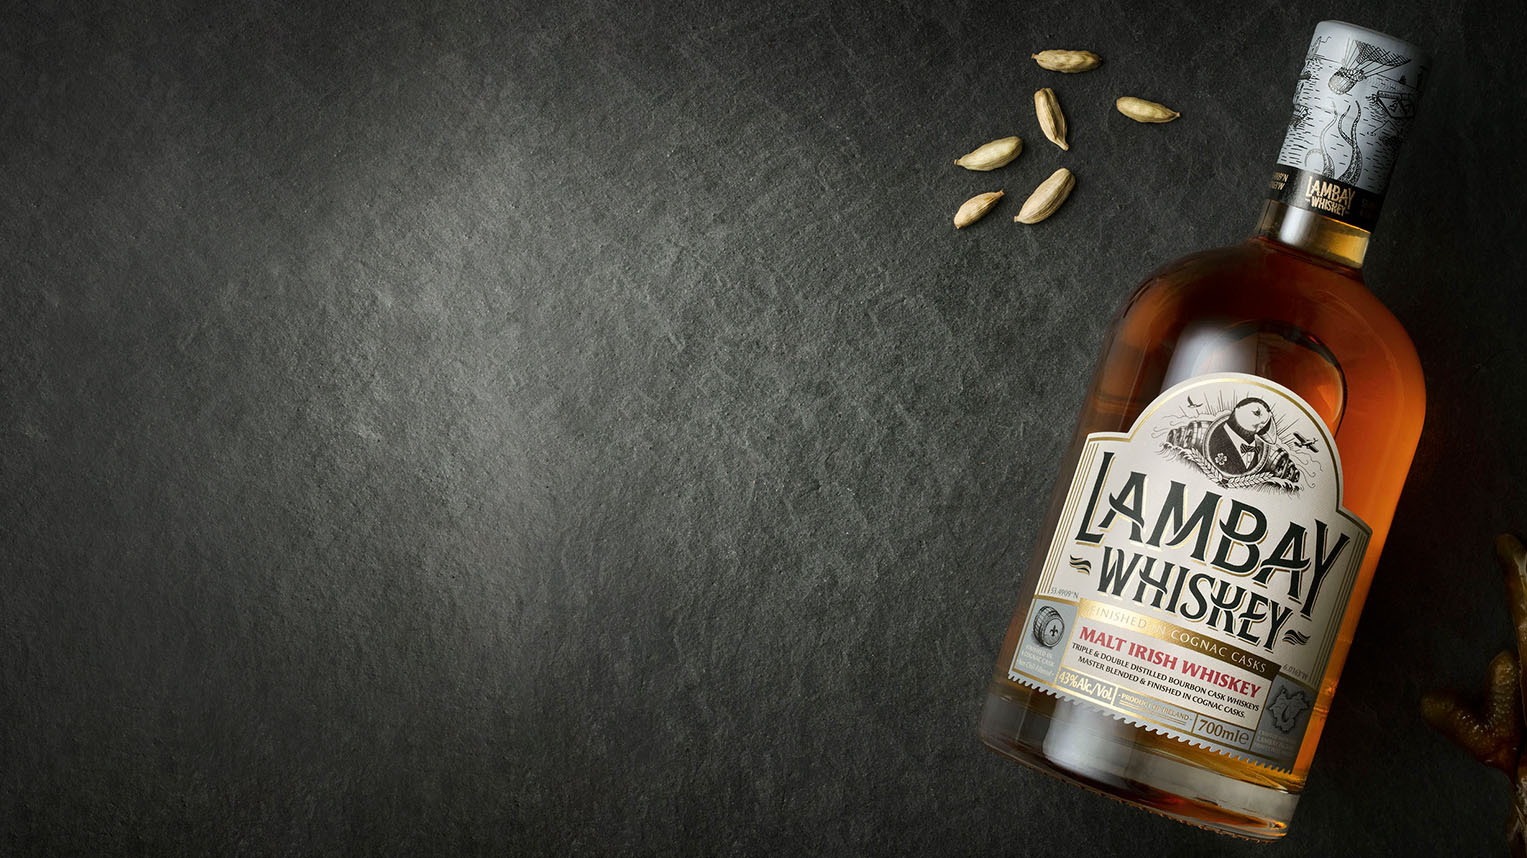 Lambay Malt Irish Whiskey bottle